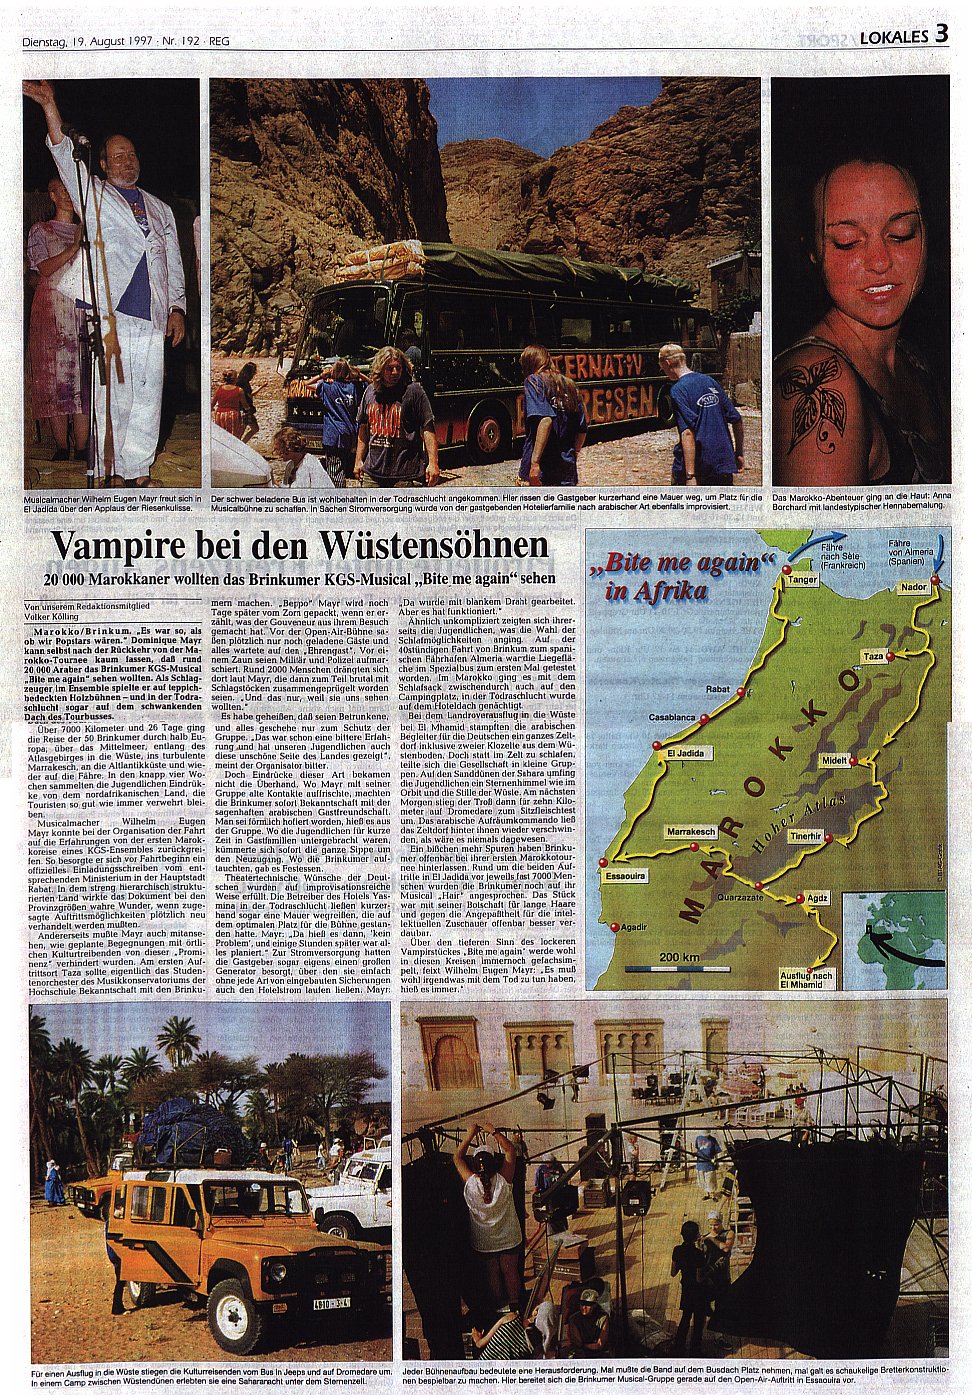 Weser Kurier vom 19. August 1997: